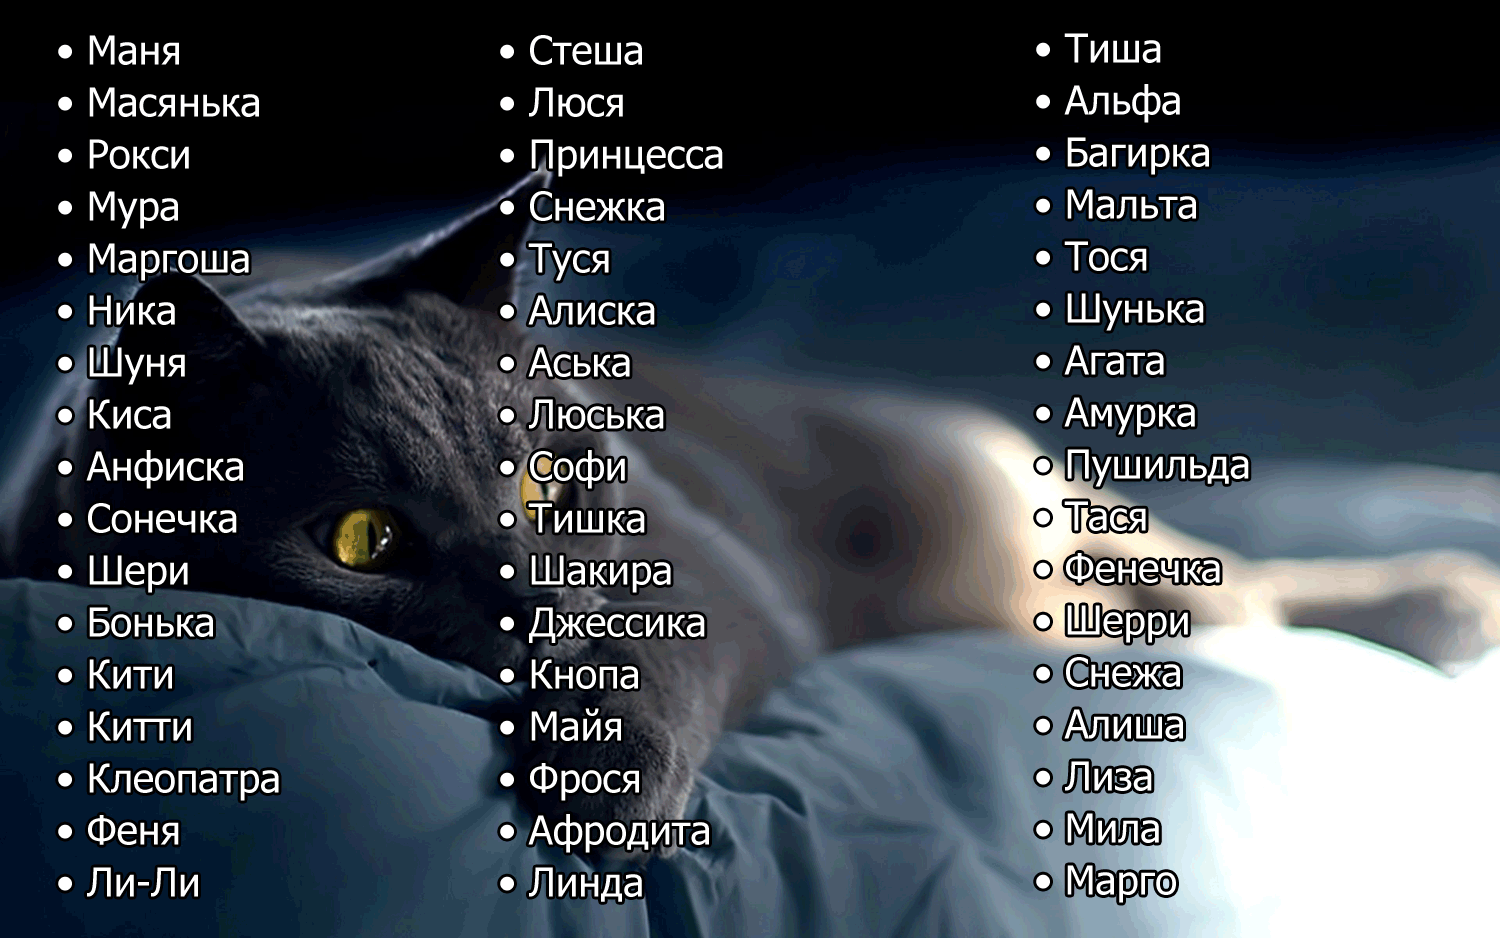 Самый полный список кличек для серого кота и кошки Имена на каждую букву алфавита Клички популярных персонажев, подборка оригинальных и прикольных вариантов